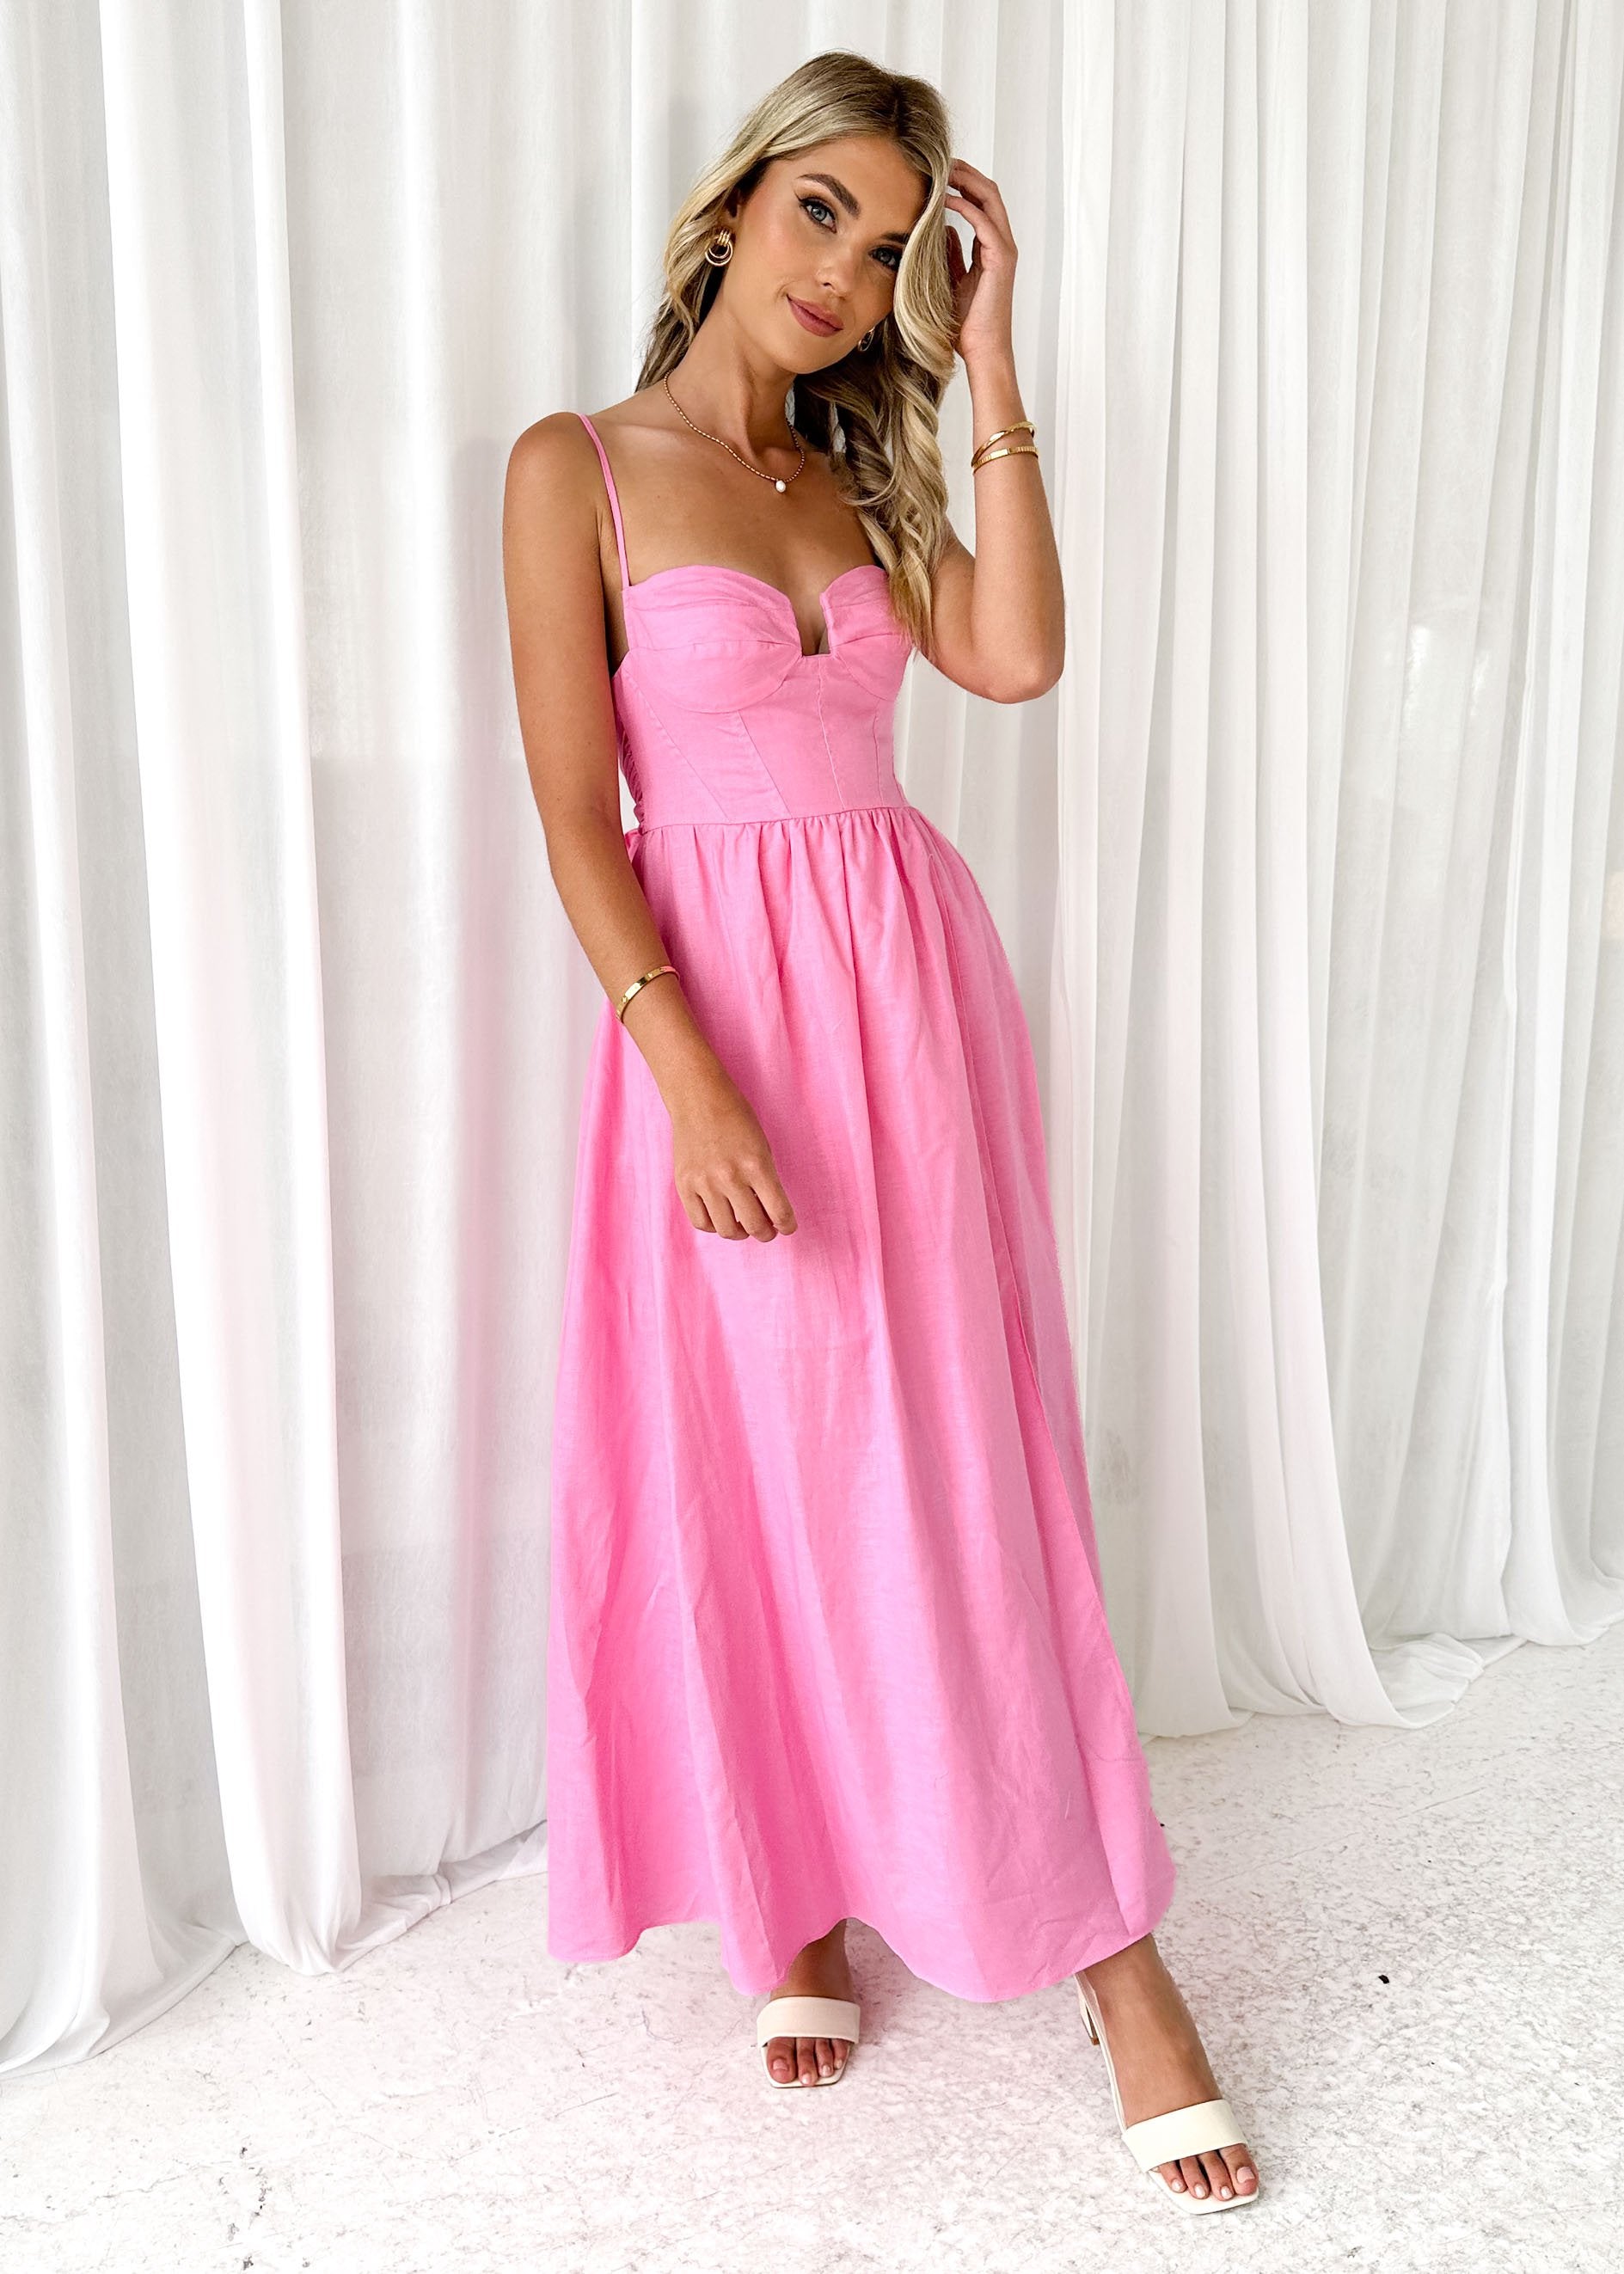 Rydee Maxi Dress - Pink